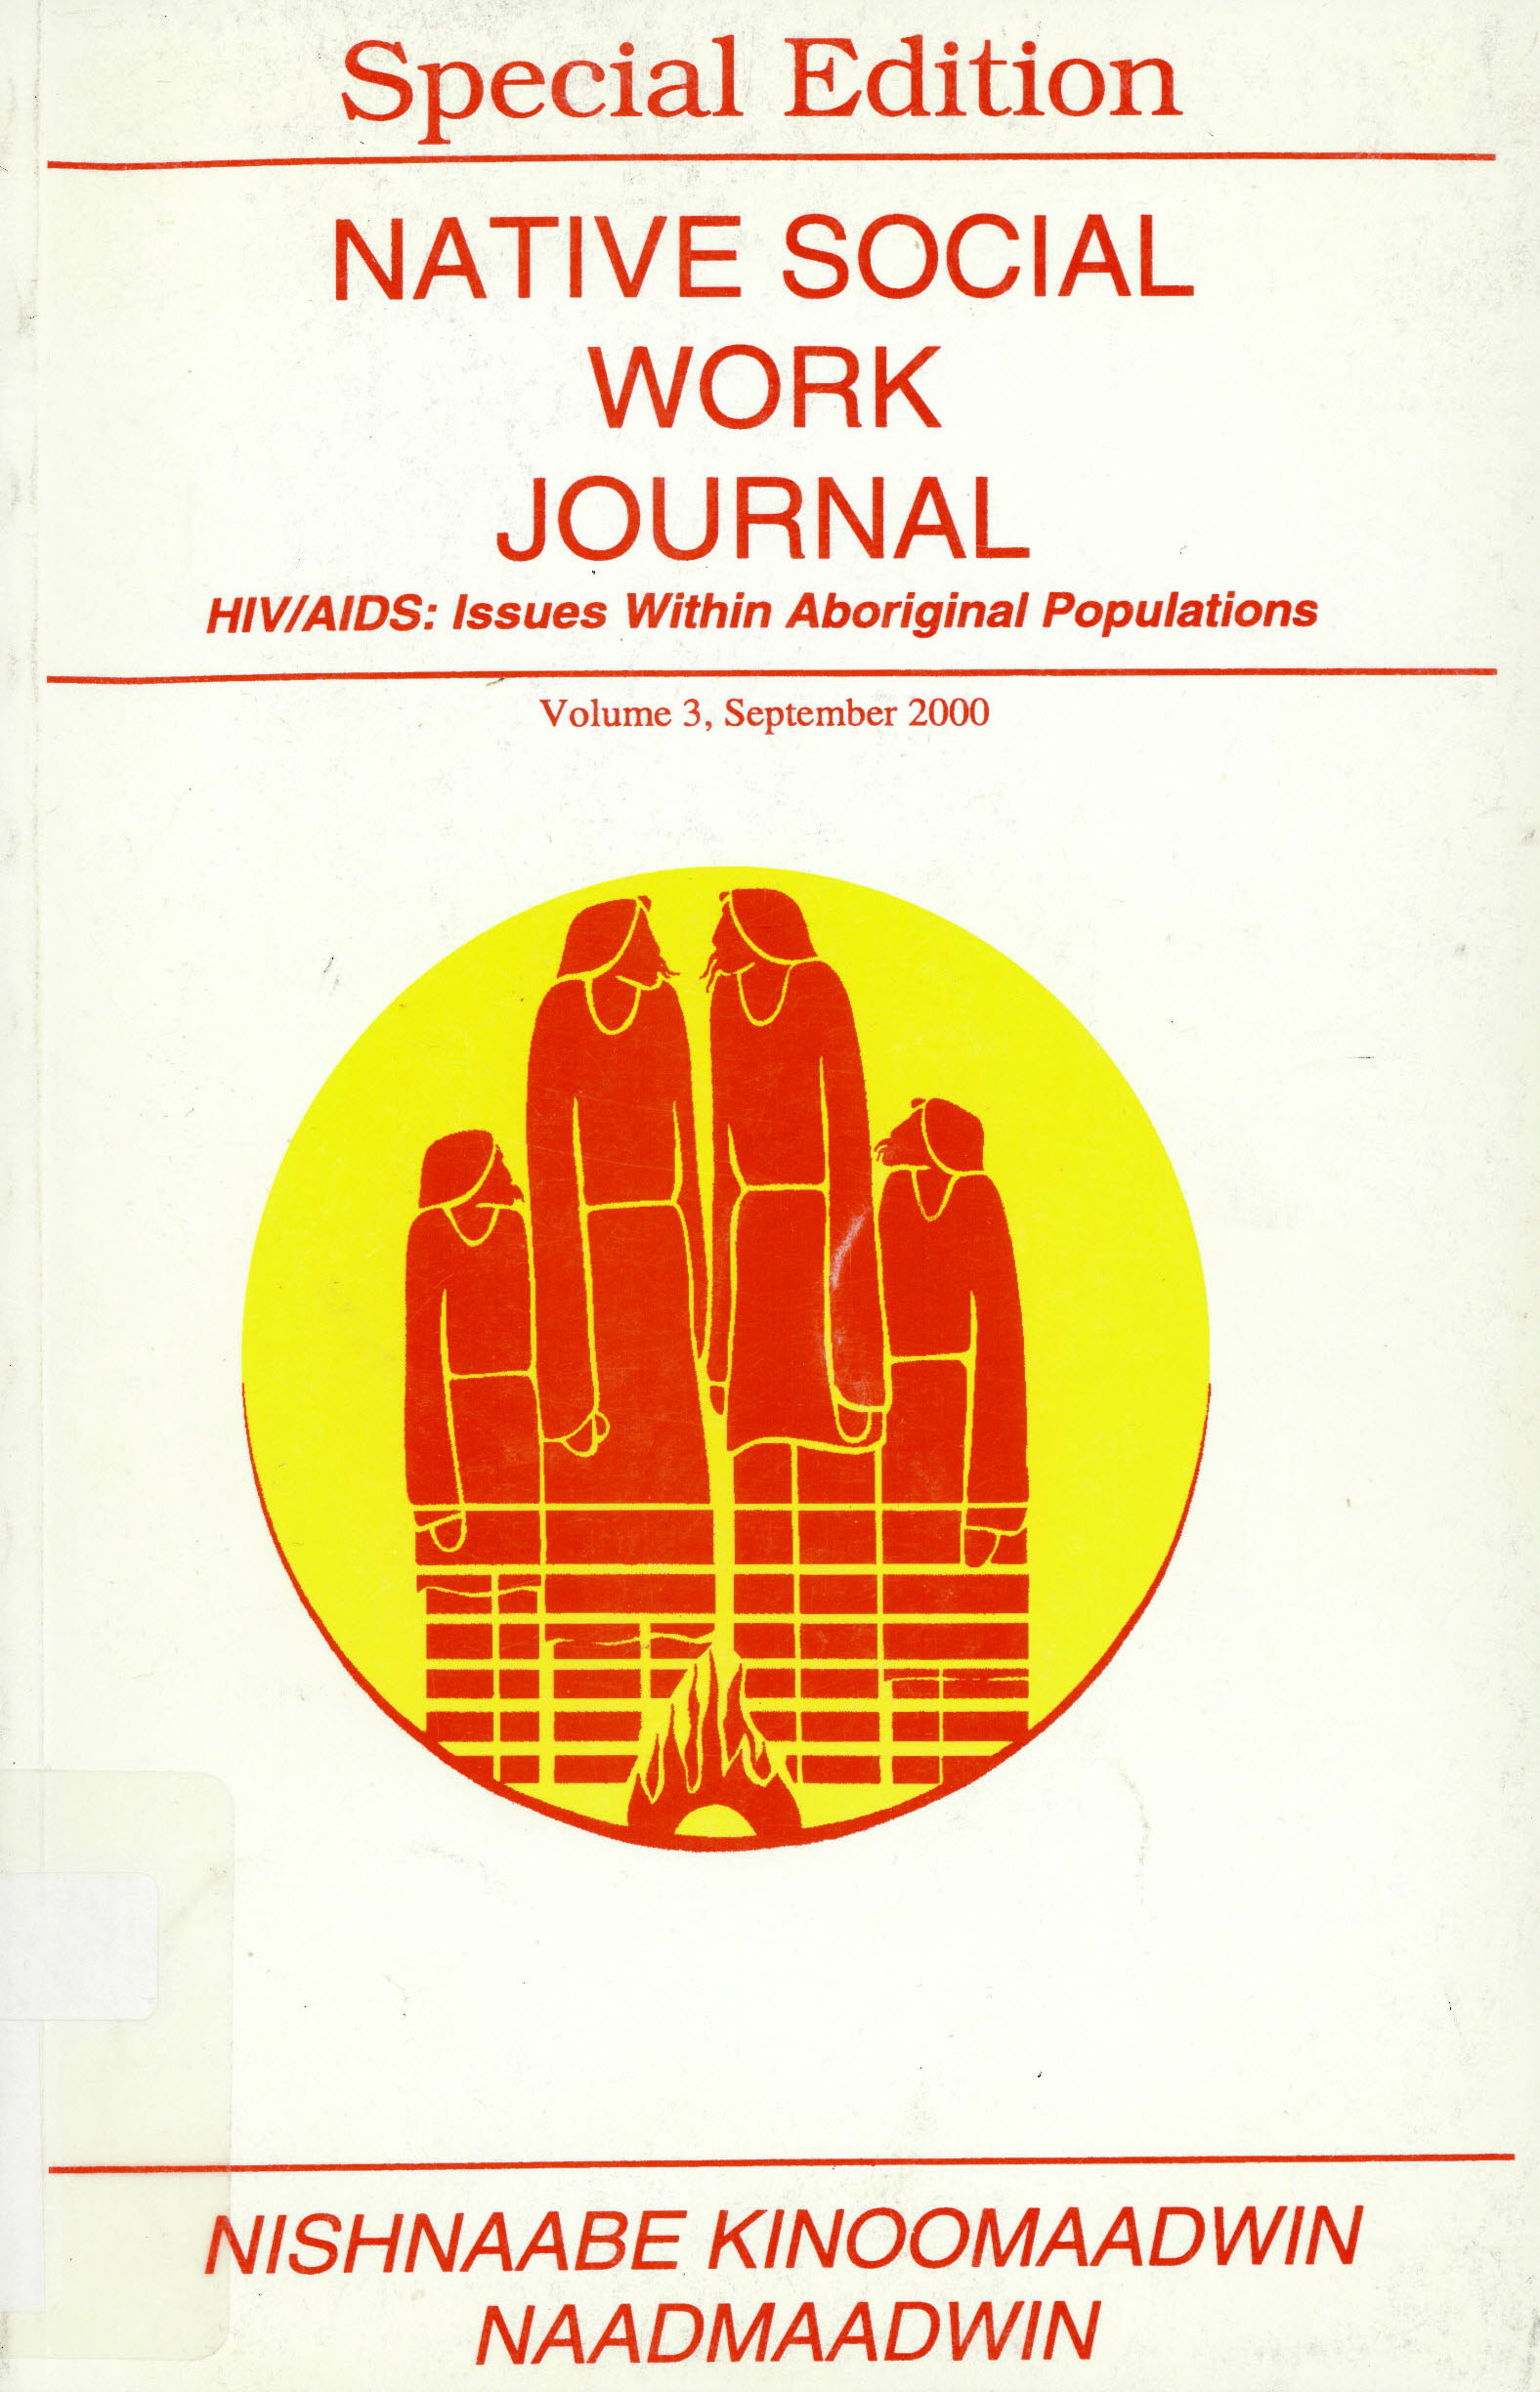 Native social work journal = : Nishnaabe kinoomaadwin naadmaadwin : HIV/AIDS issues within Aboriginal populations